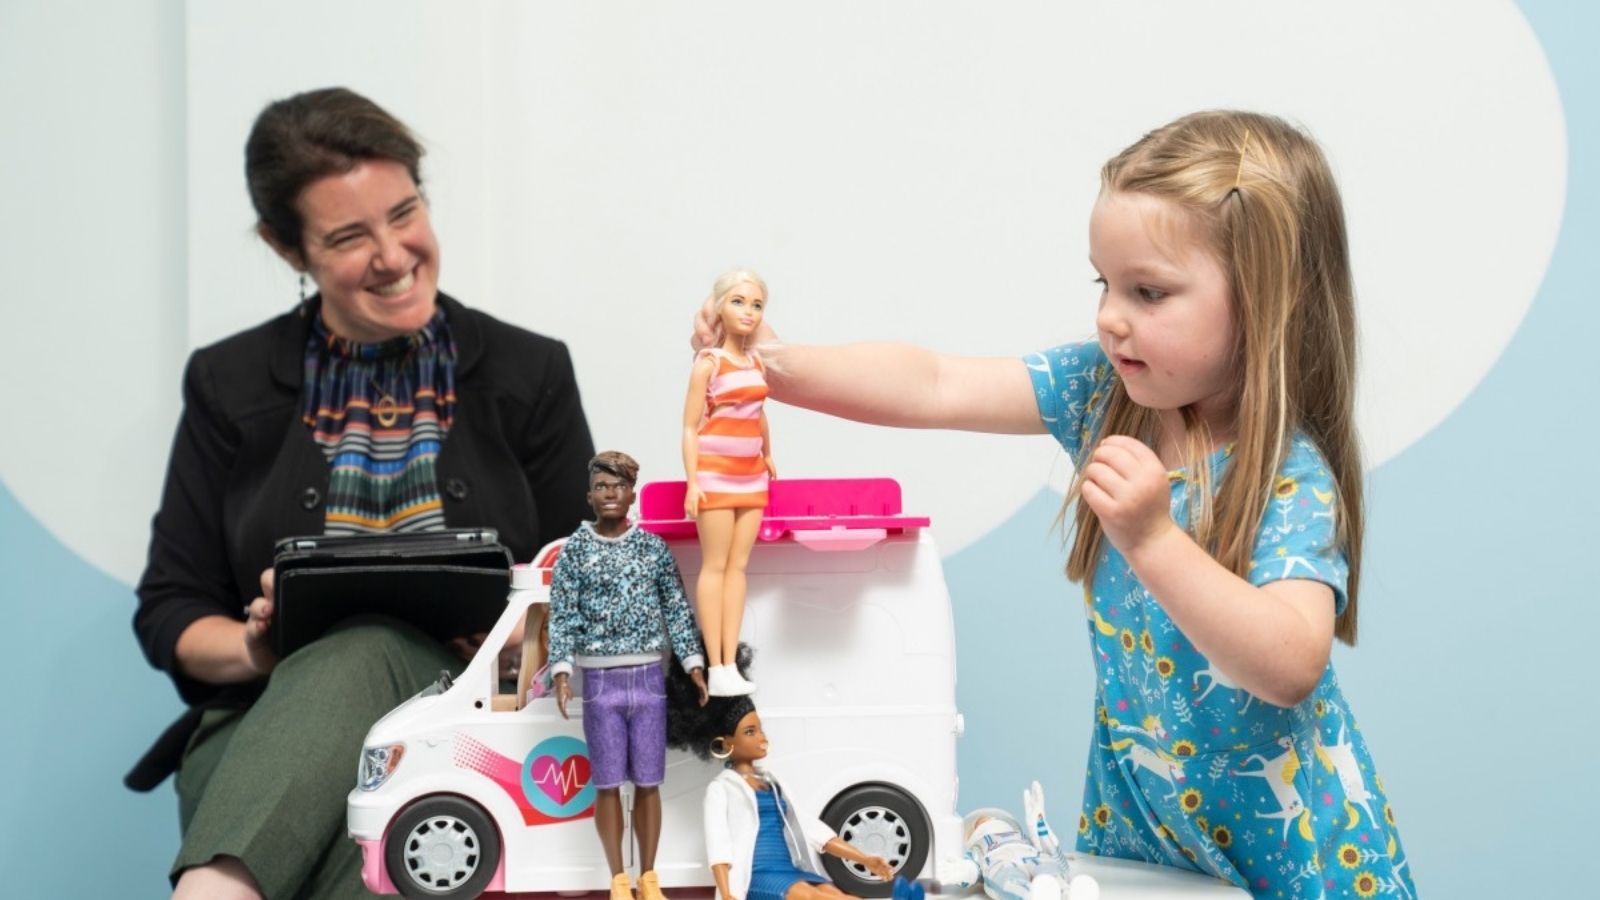 Jak zabawa lalkami może rozwinąć inteligencję emocjonalną? Barbie mediarun mattel badania